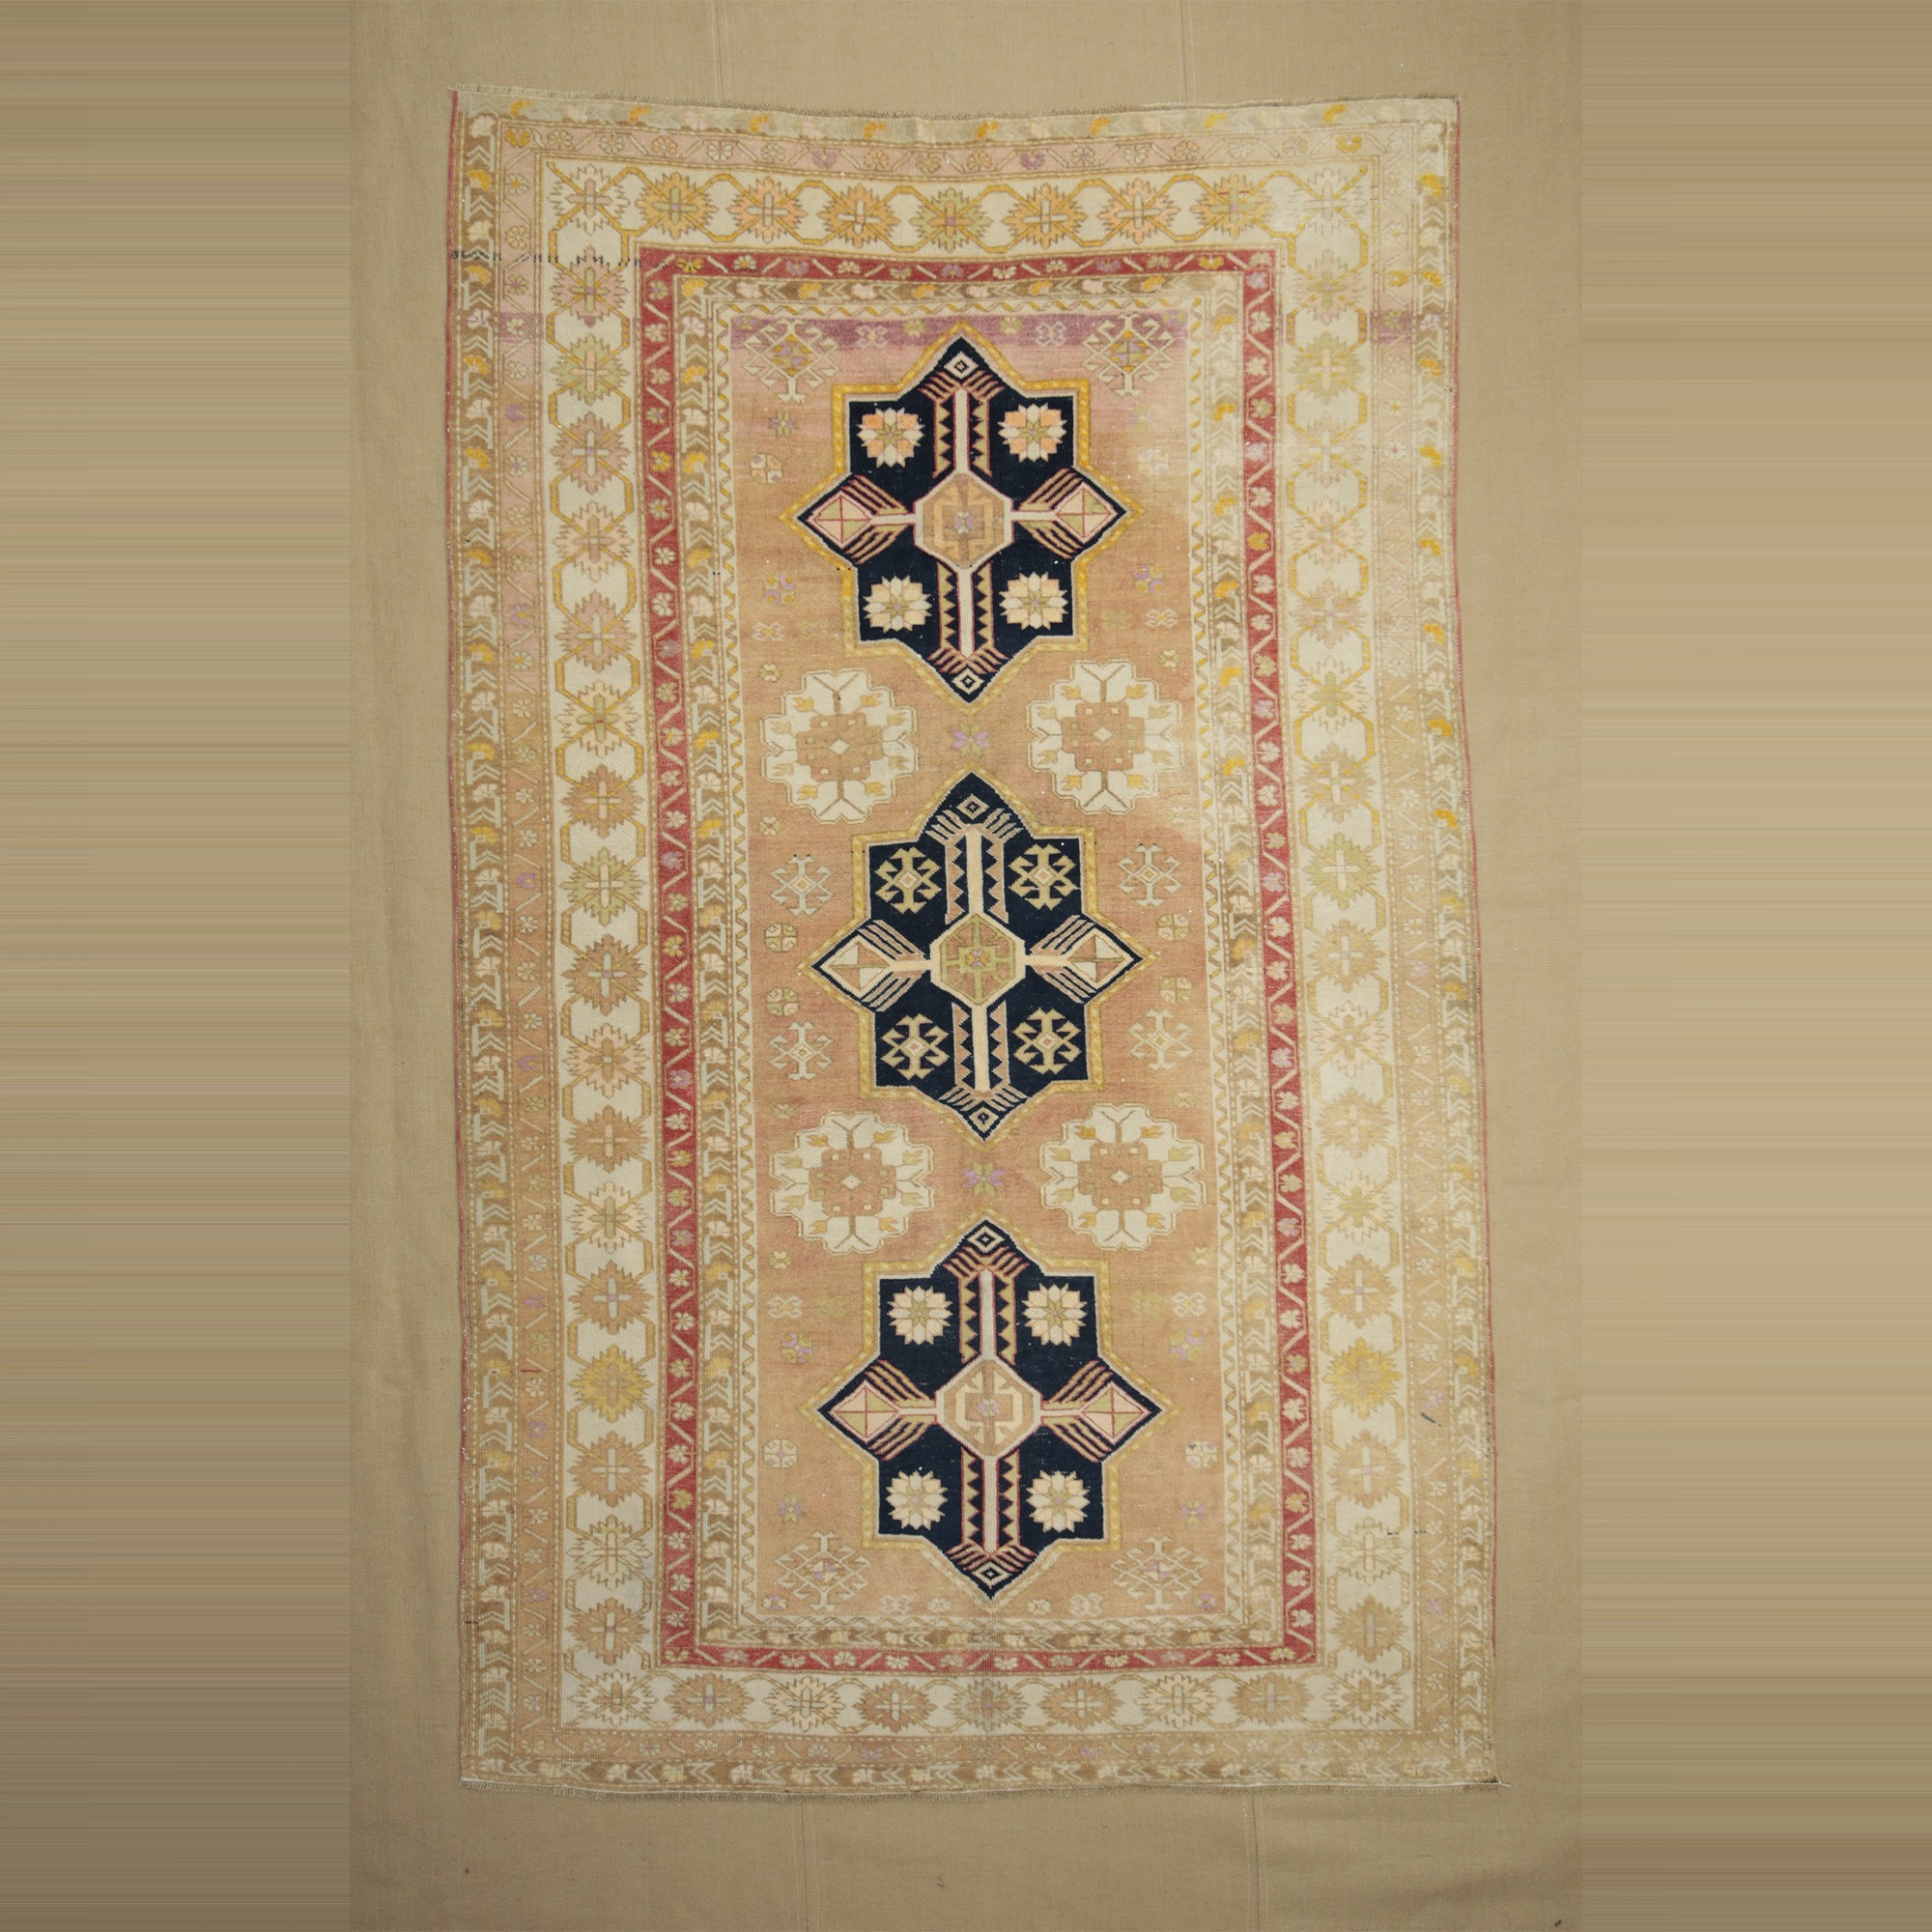 Old Turkuman Carpet Rug 5x8 153,253 - Turkish Carpet Rug 